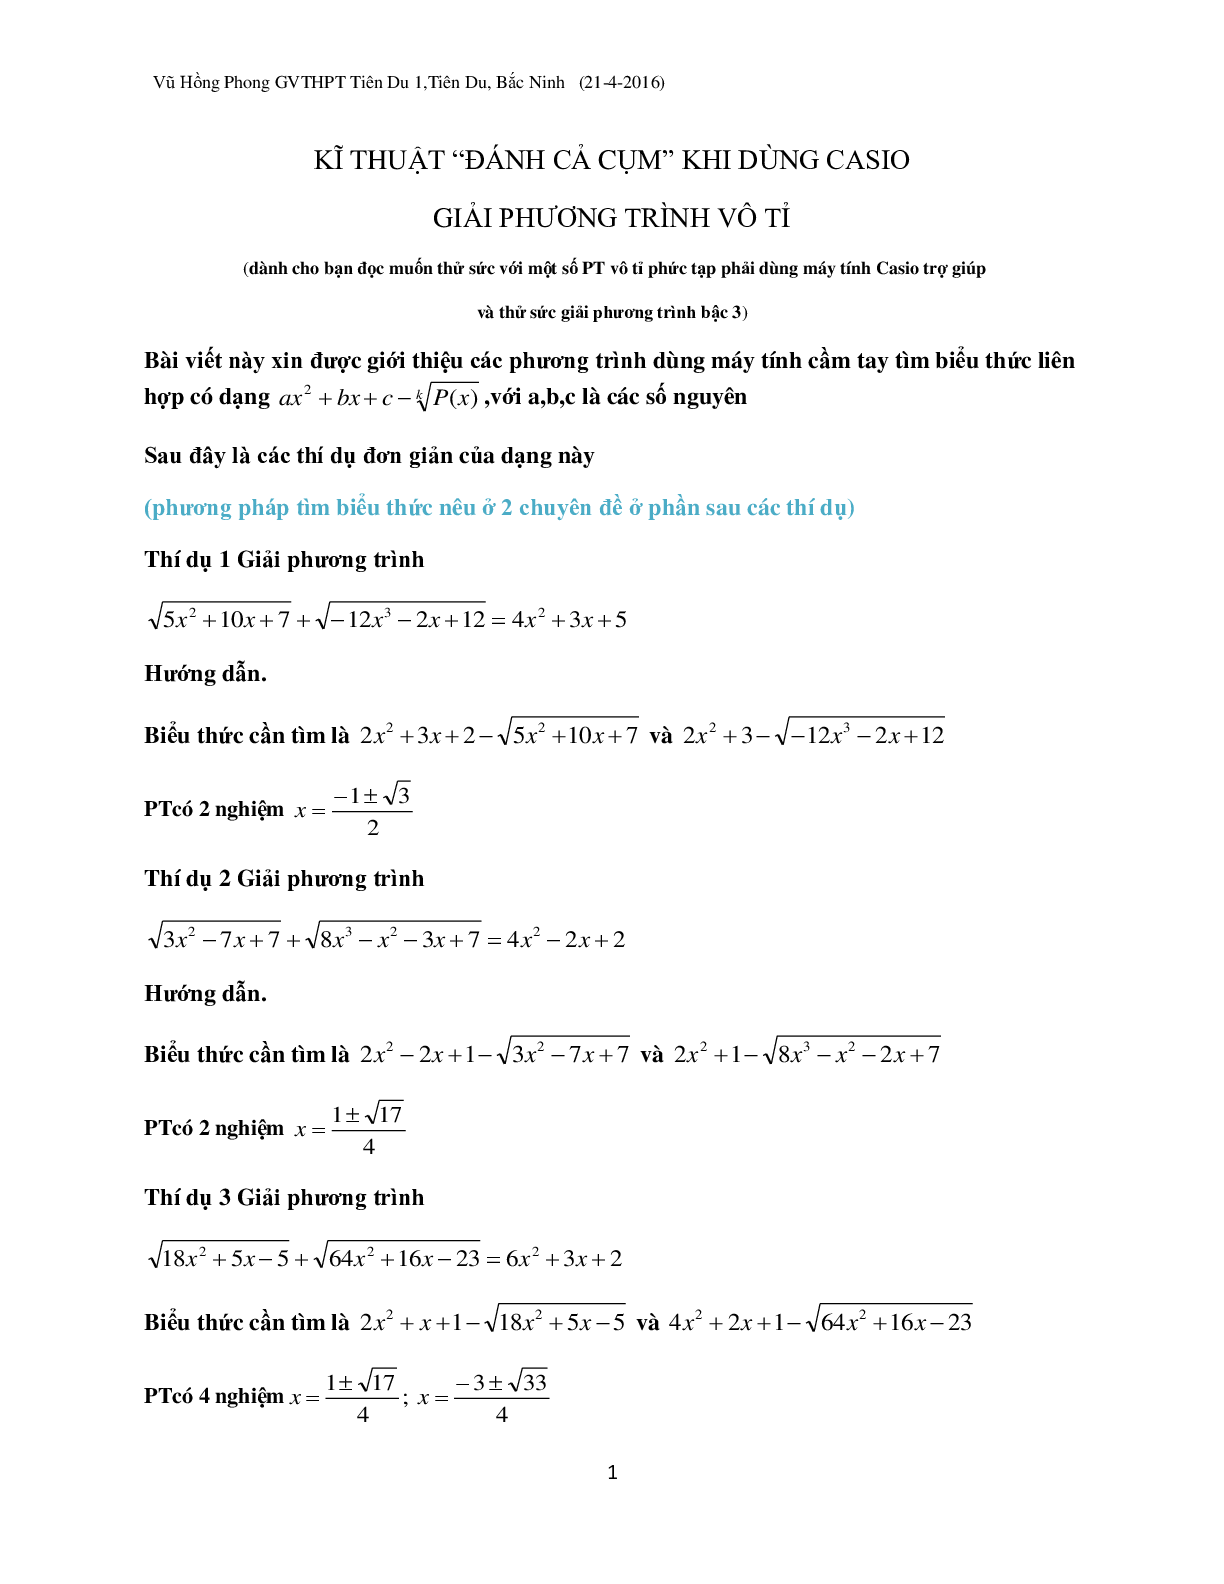 Kỹ thuật ‘đánh cả cụm’ khi dùng Casio giải phương trình vô tỉ (trang 1)